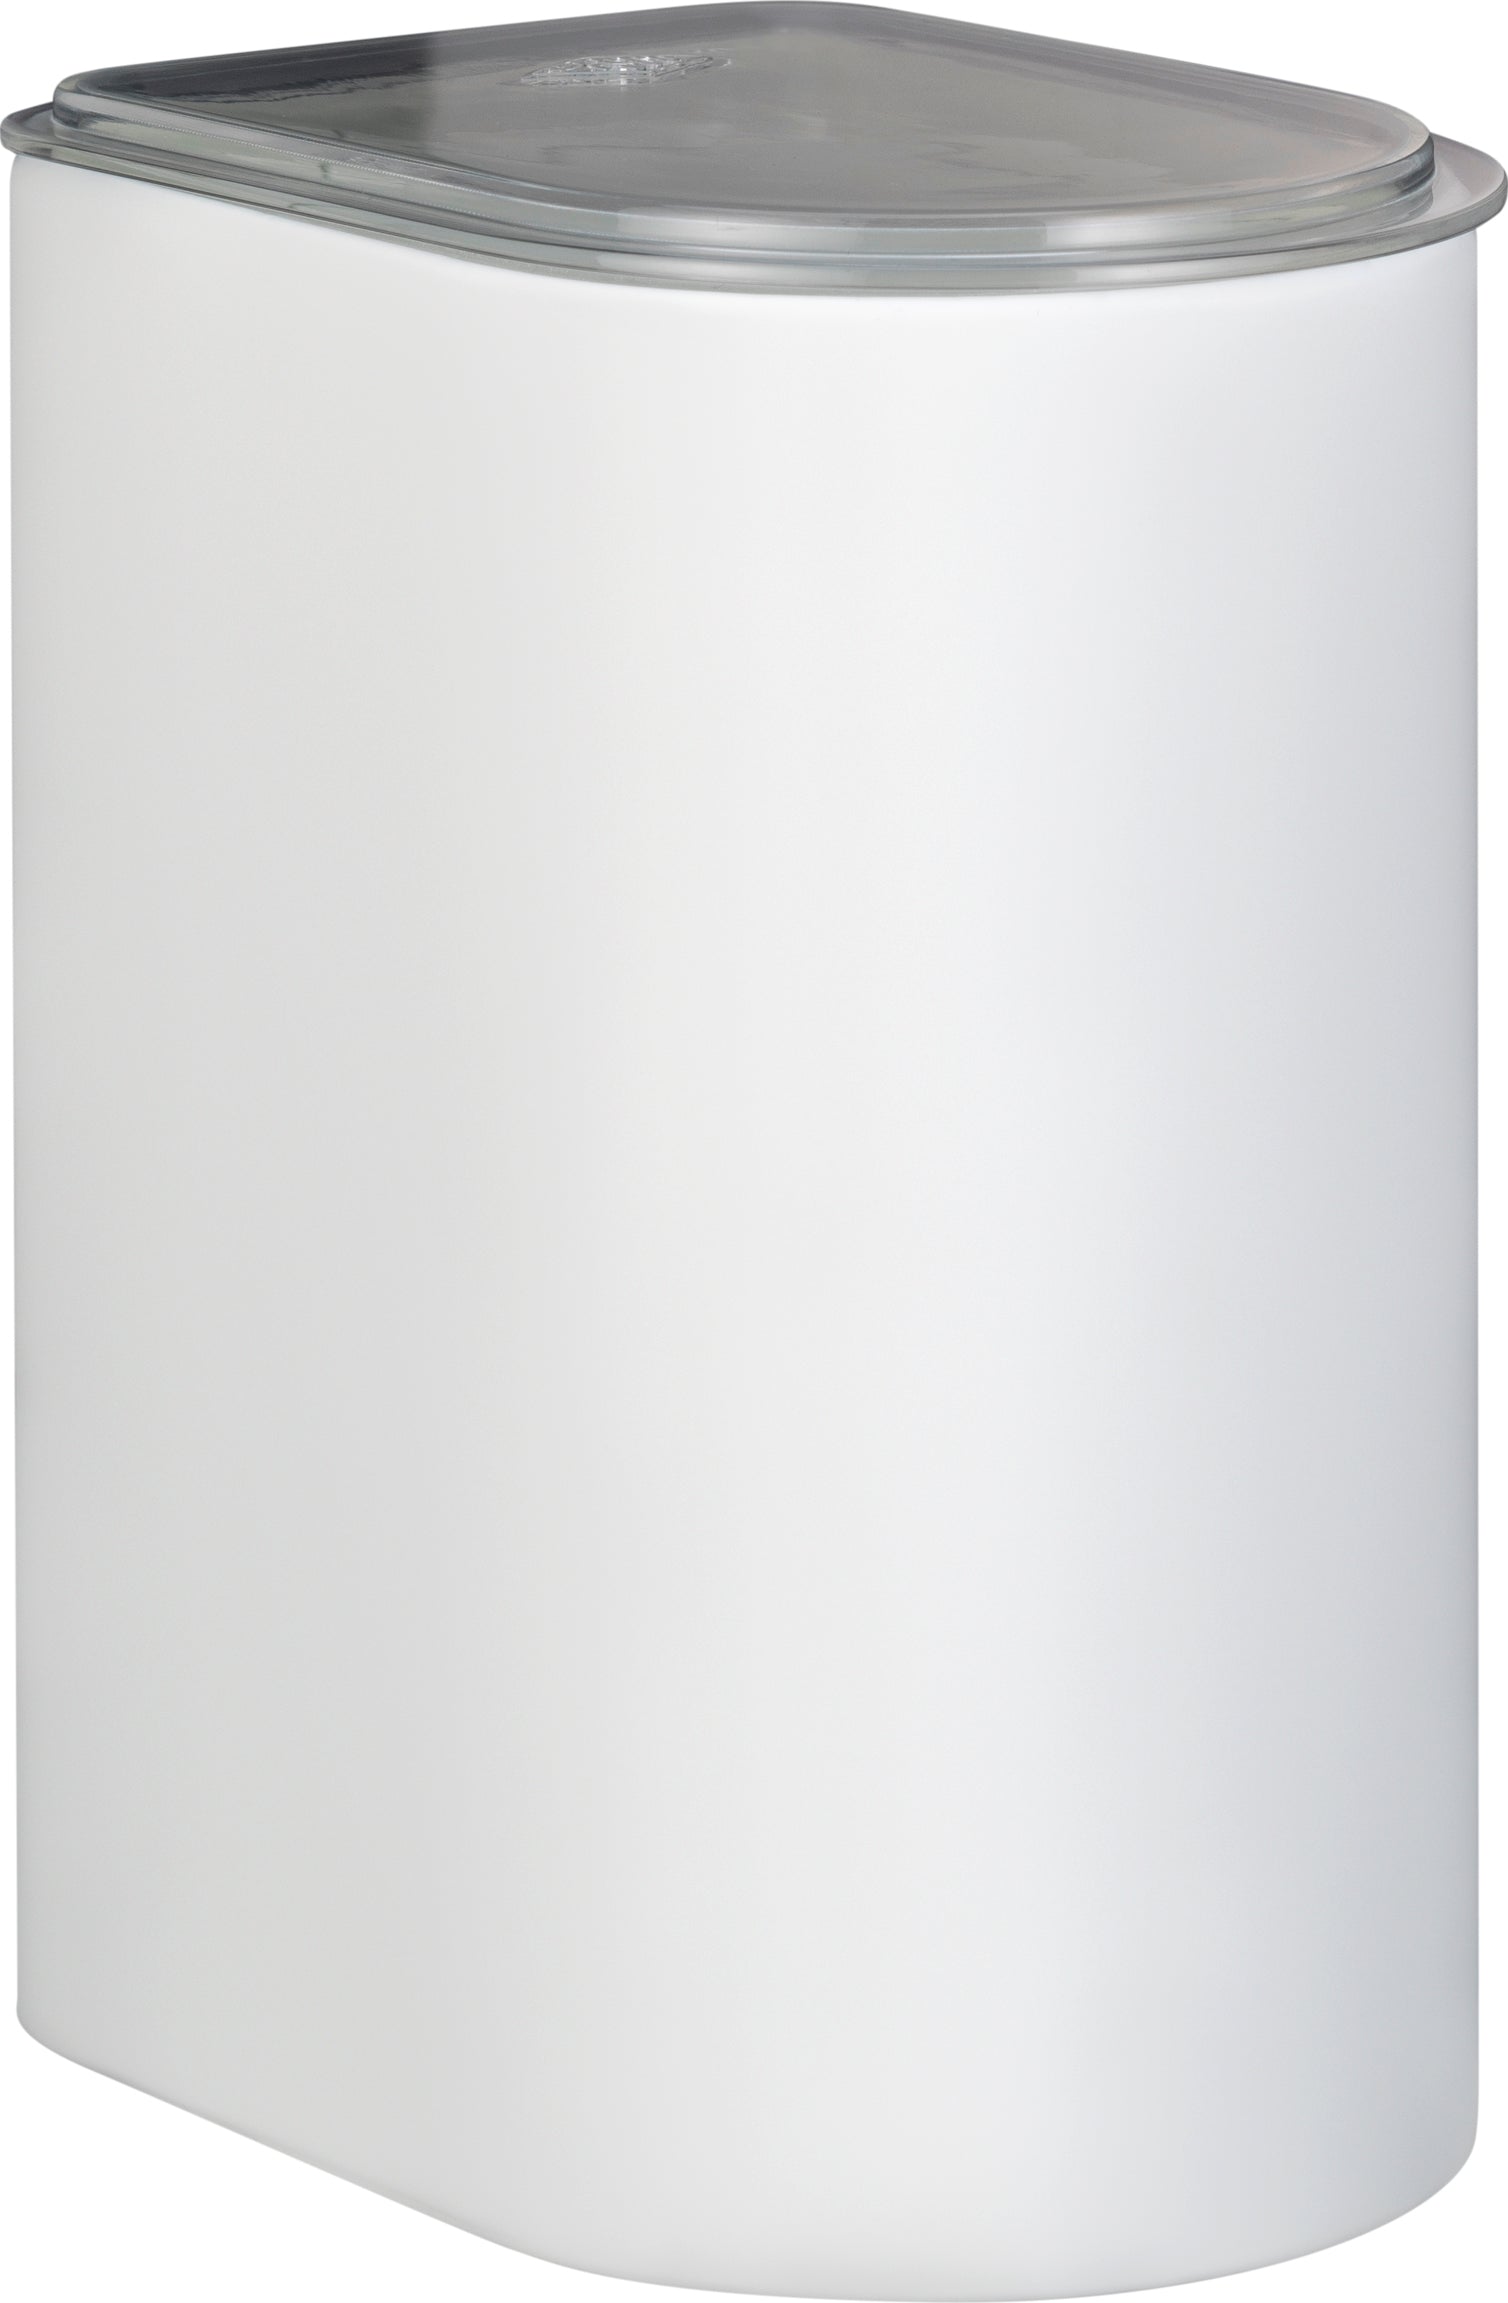 Wesco Kapsel 3 liter med akryl lock, vit matt